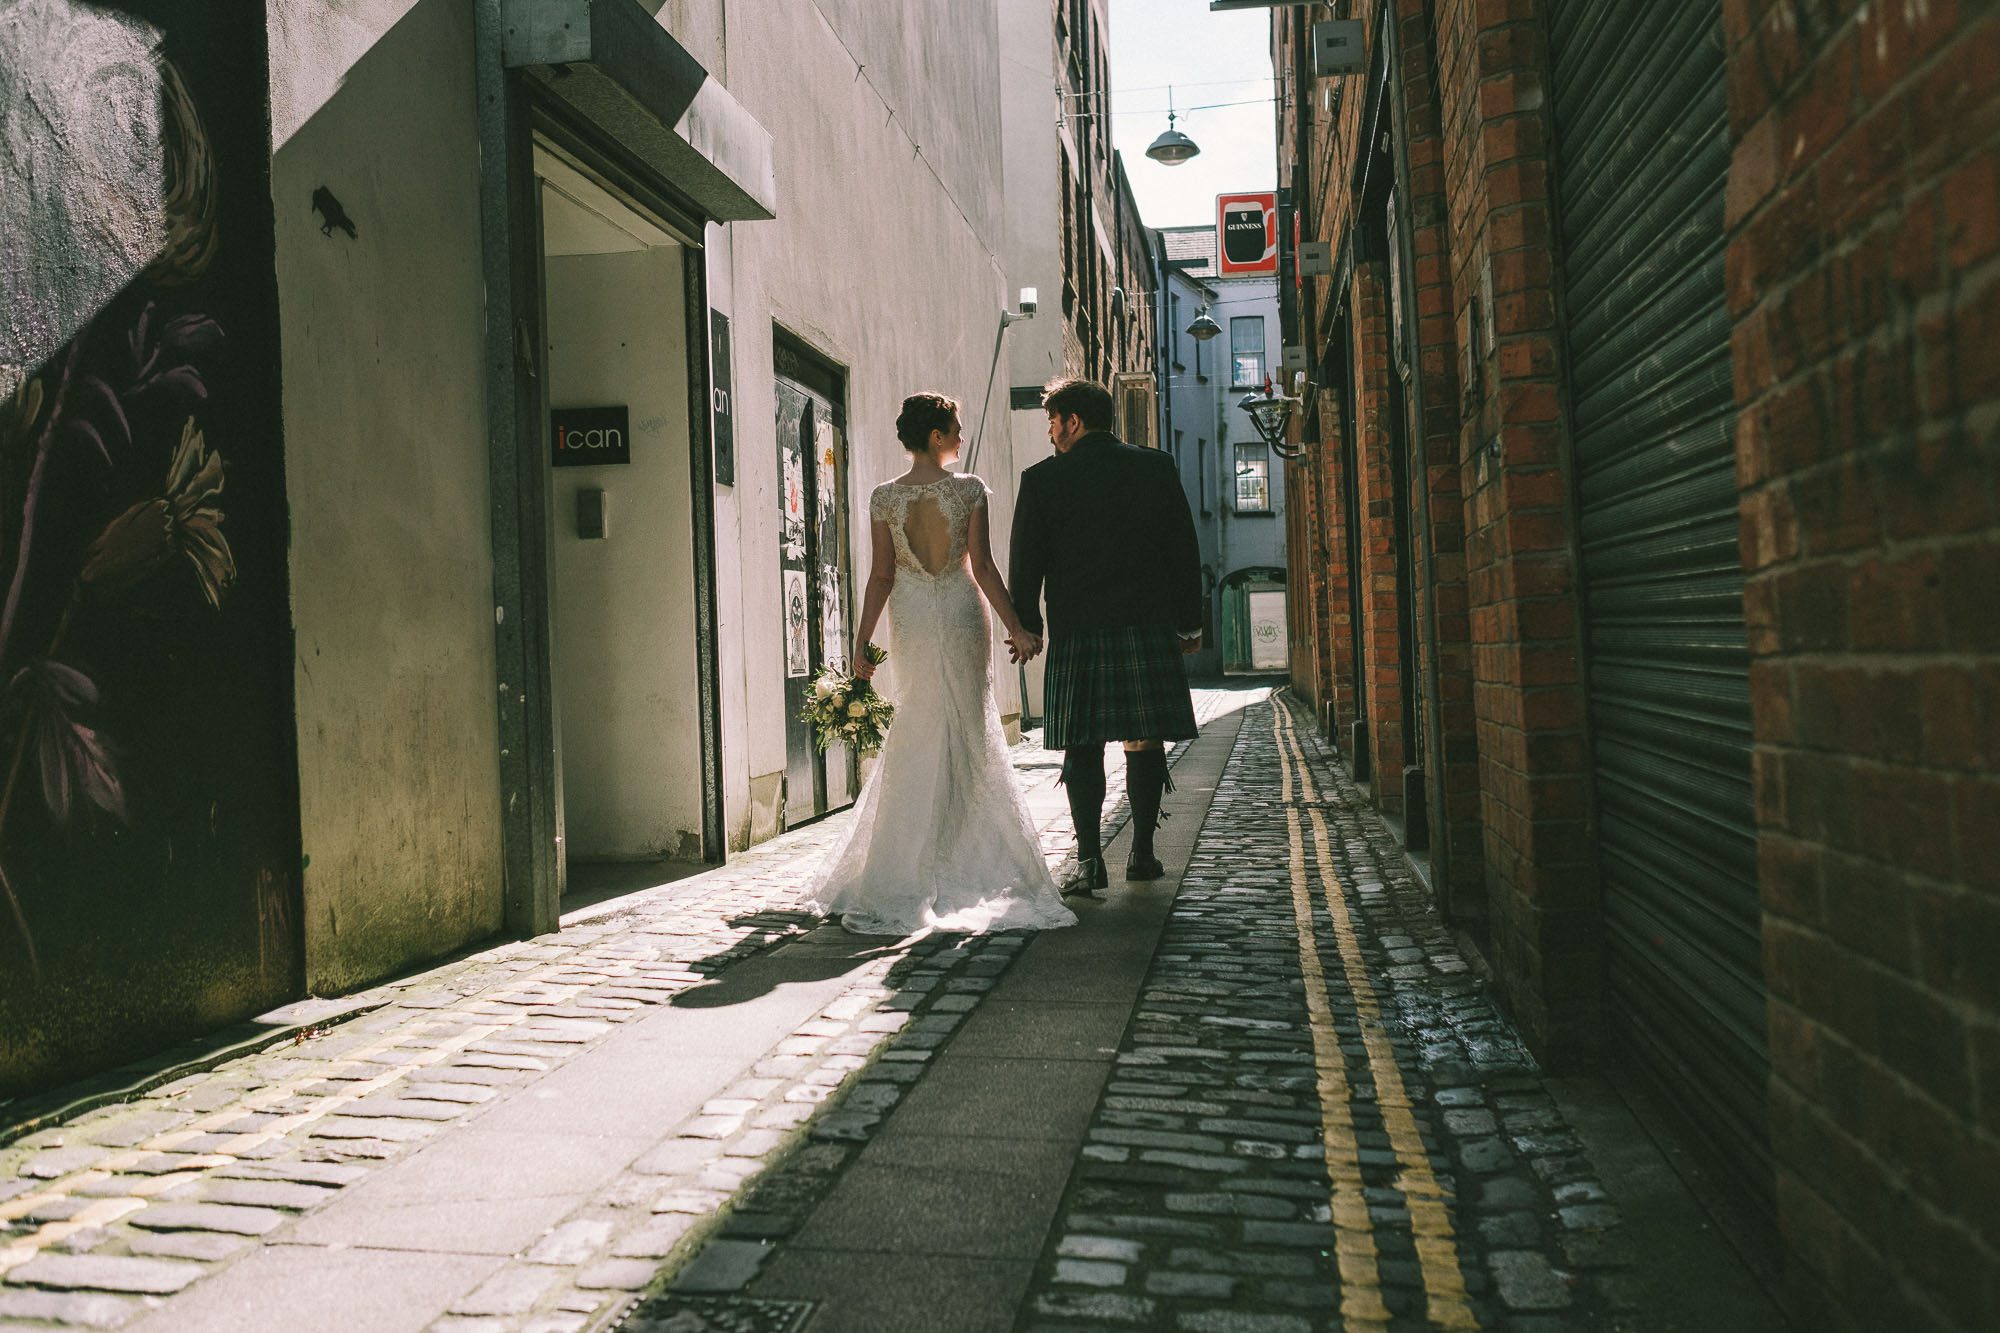 2016 wedding photographer Northern Ireland